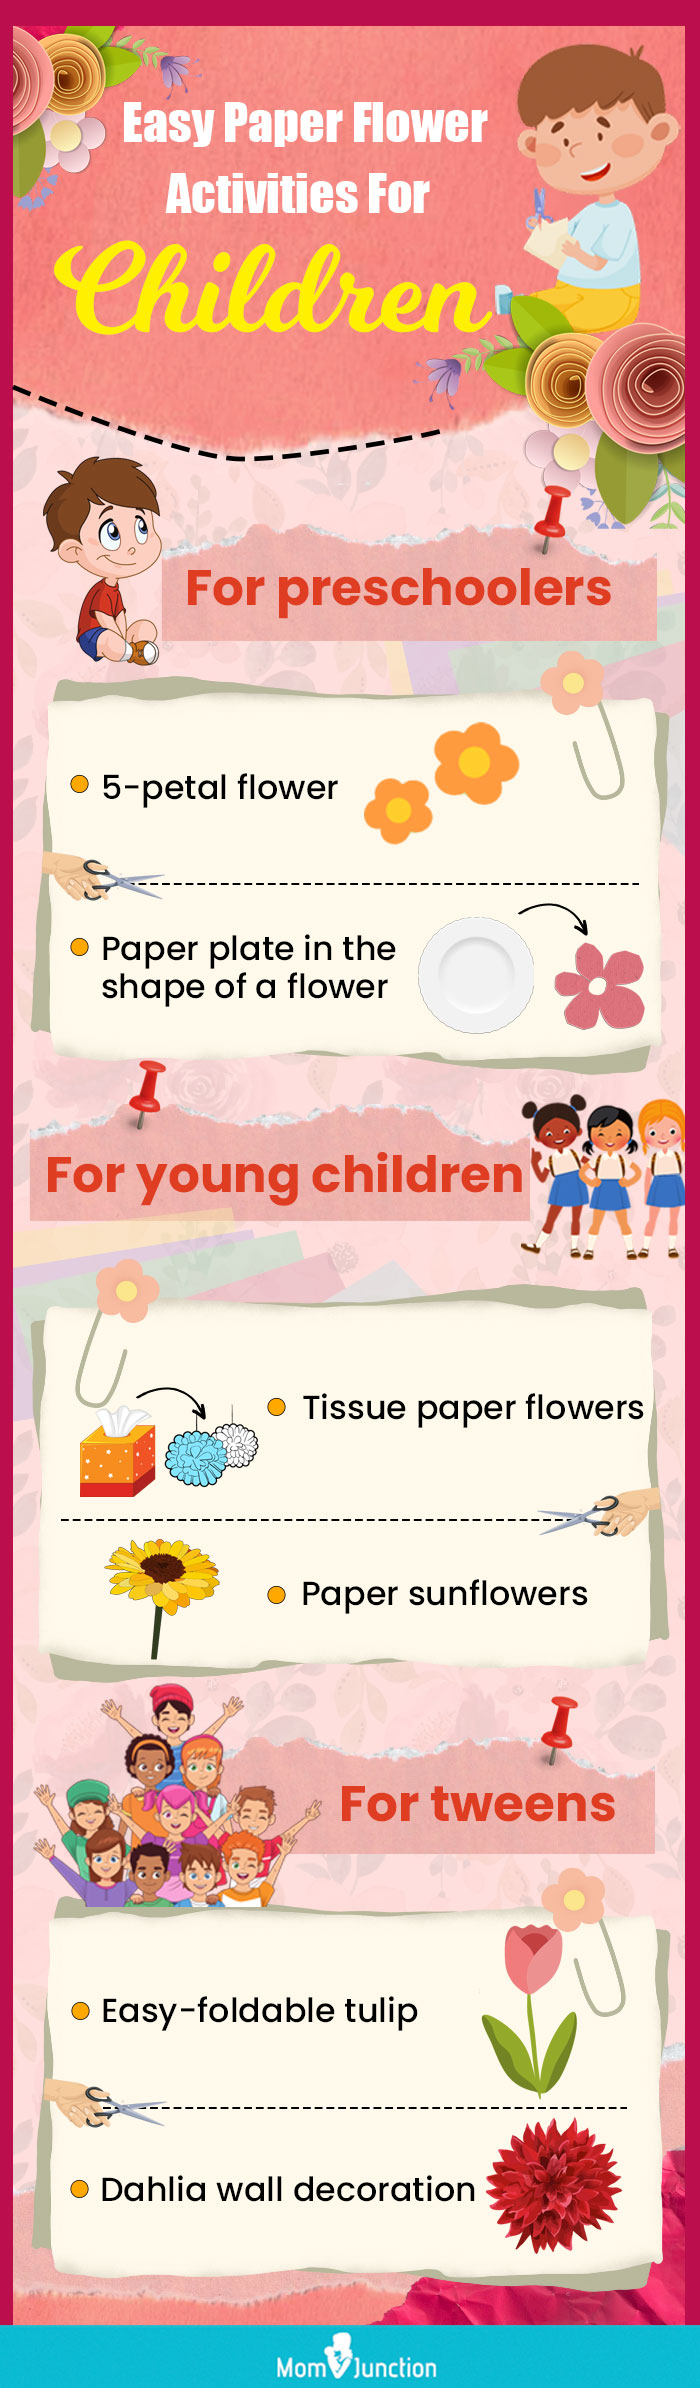 儿童简易纸花活动(资讯图)